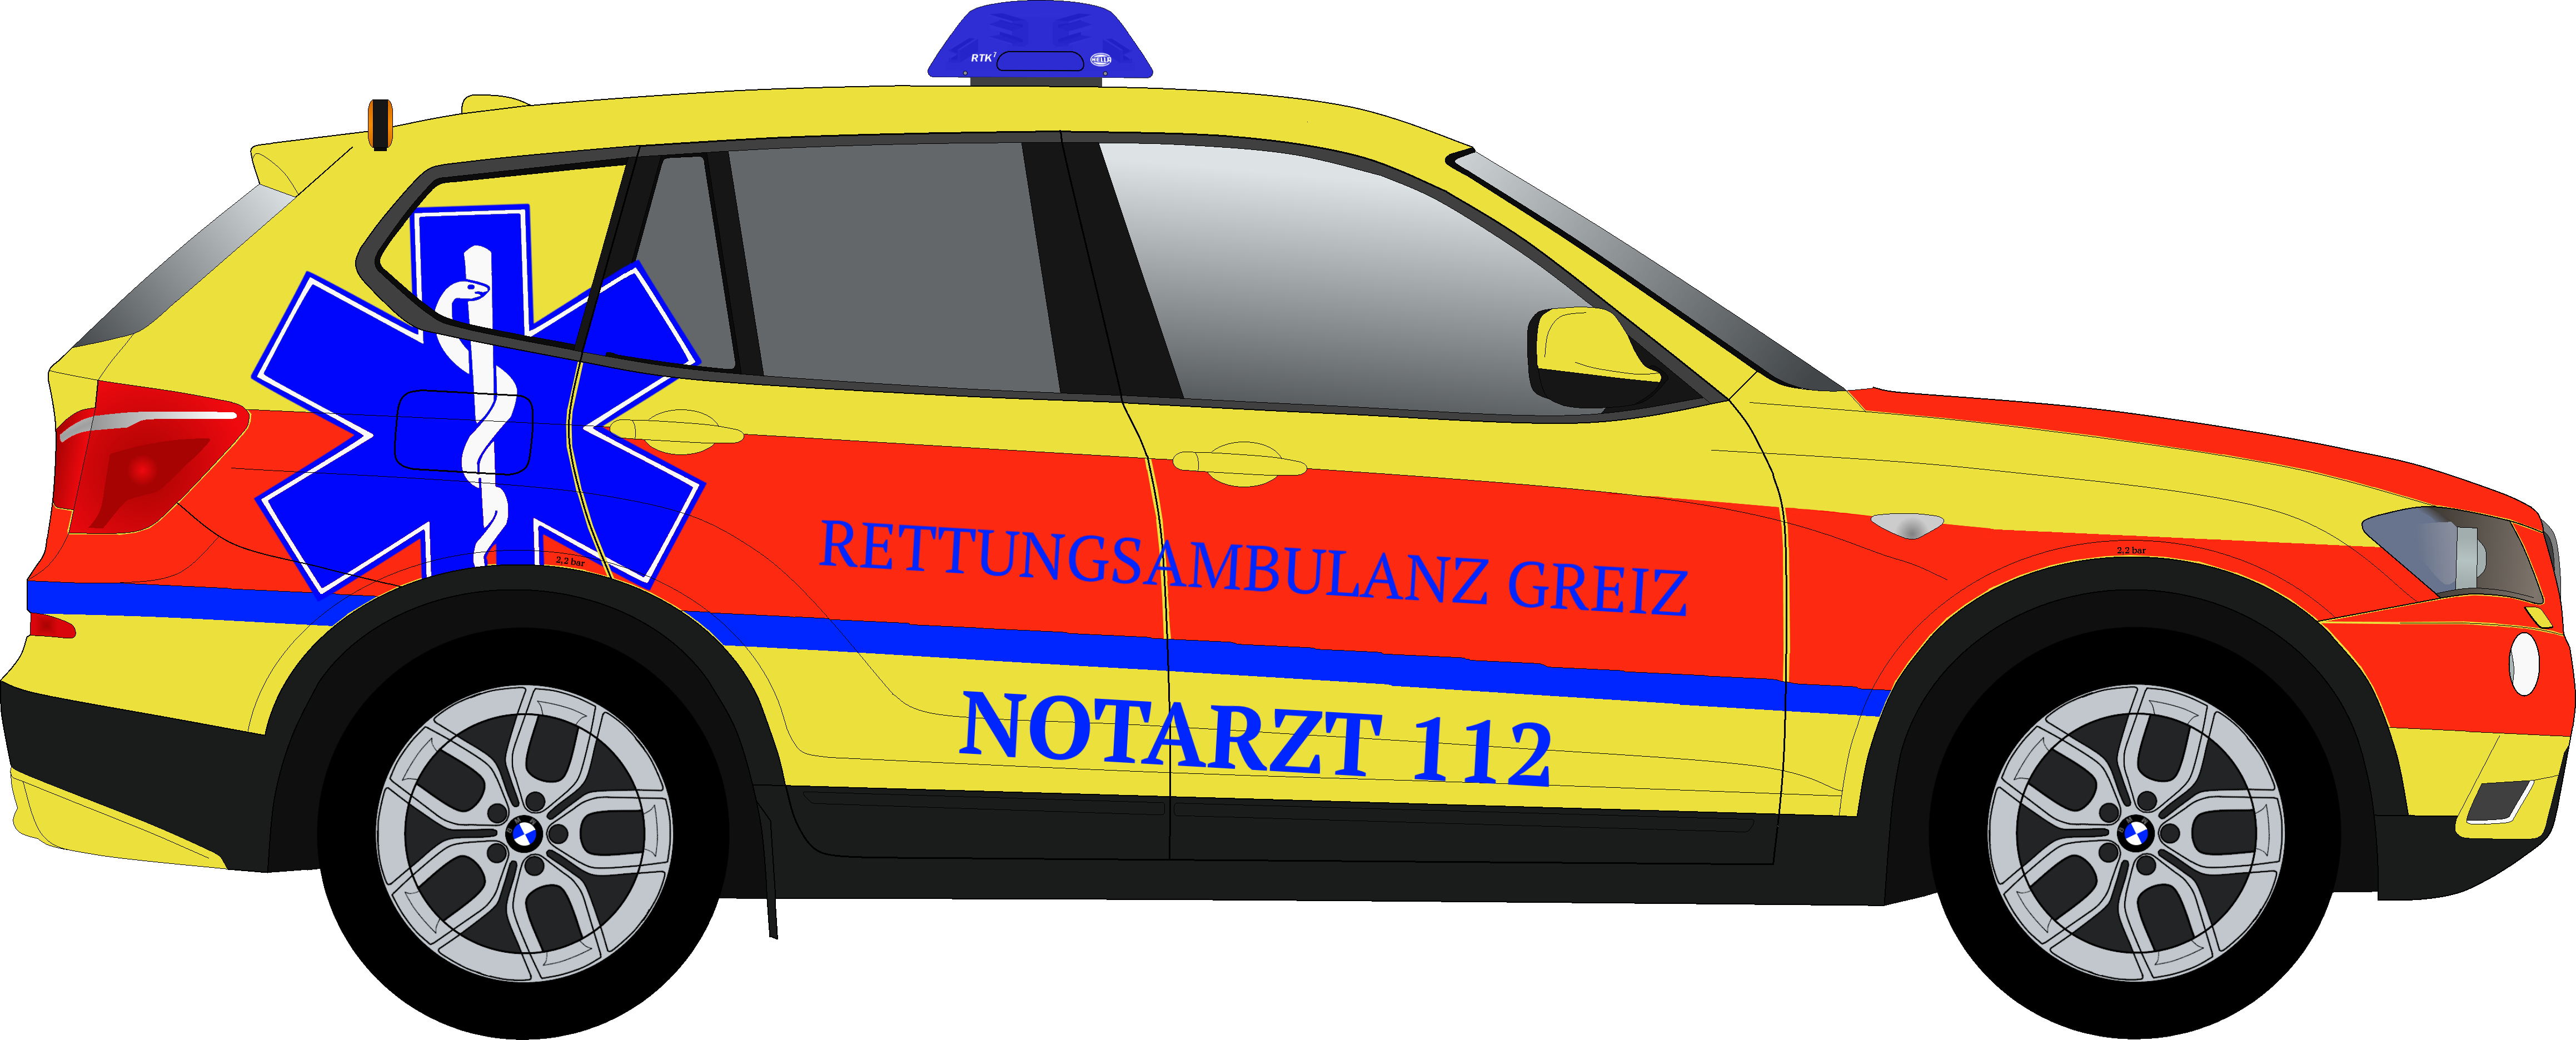 Nef Grz - Police Car (4635x1872)